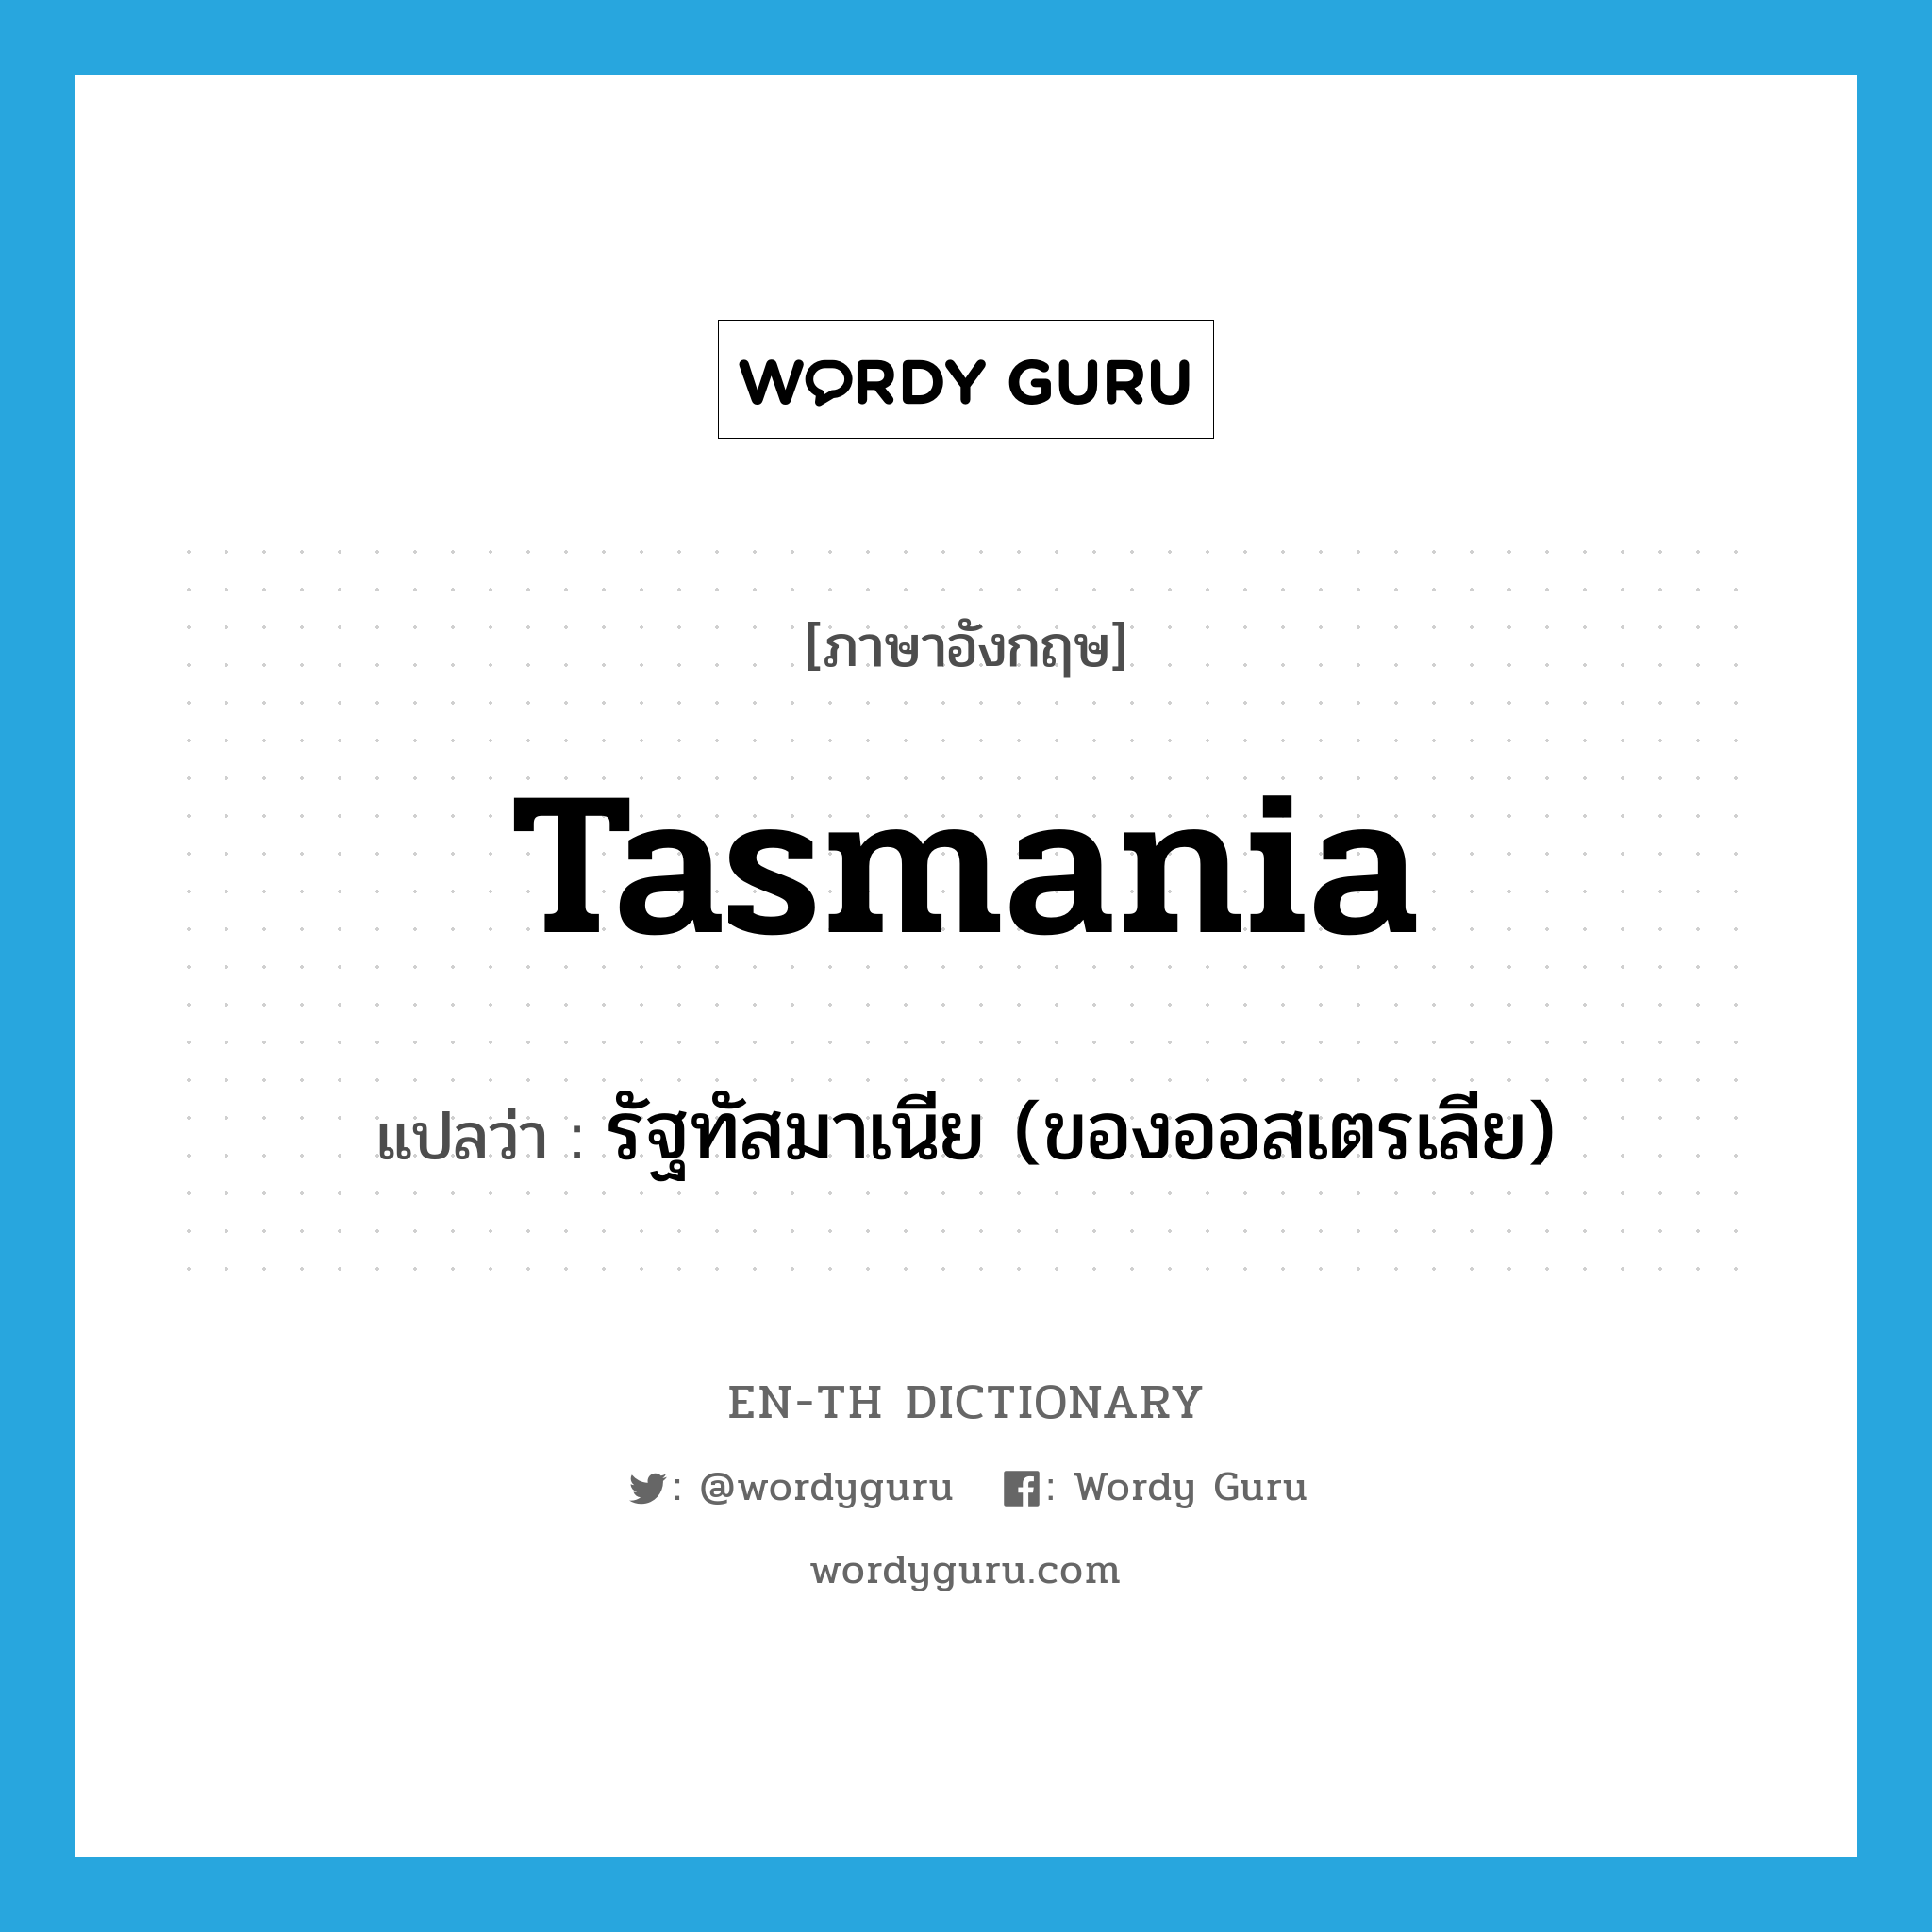 Tasmania แปลว่า?, คำศัพท์ภาษาอังกฤษ Tasmania แปลว่า รัฐทัสมาเนีย (ของออสเตรเลีย) ประเภท N หมวด N